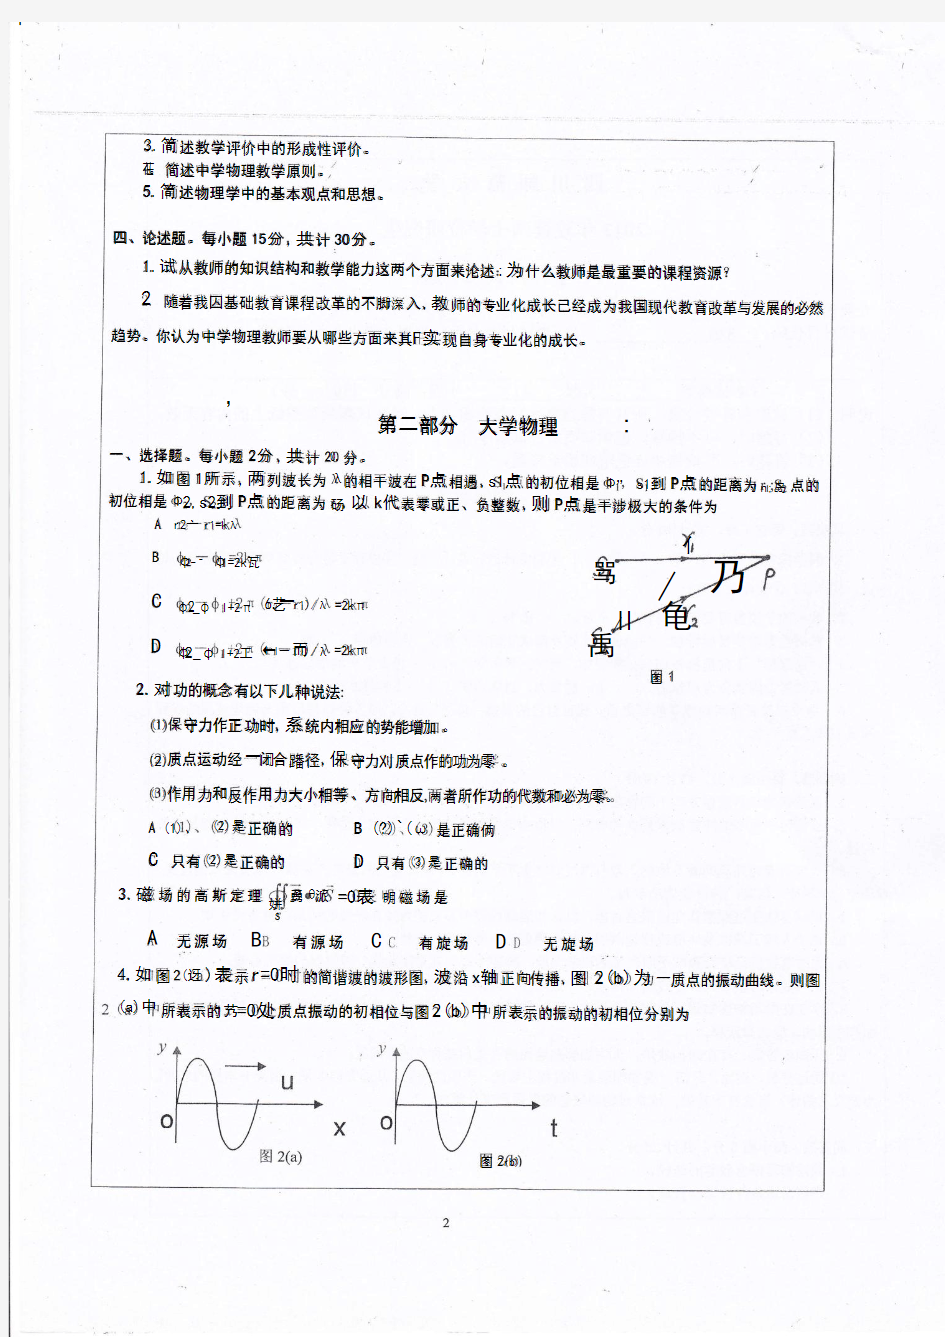 四川师范大学2012年硕士研究生入学考试试题(828物理教学论与大学物理)